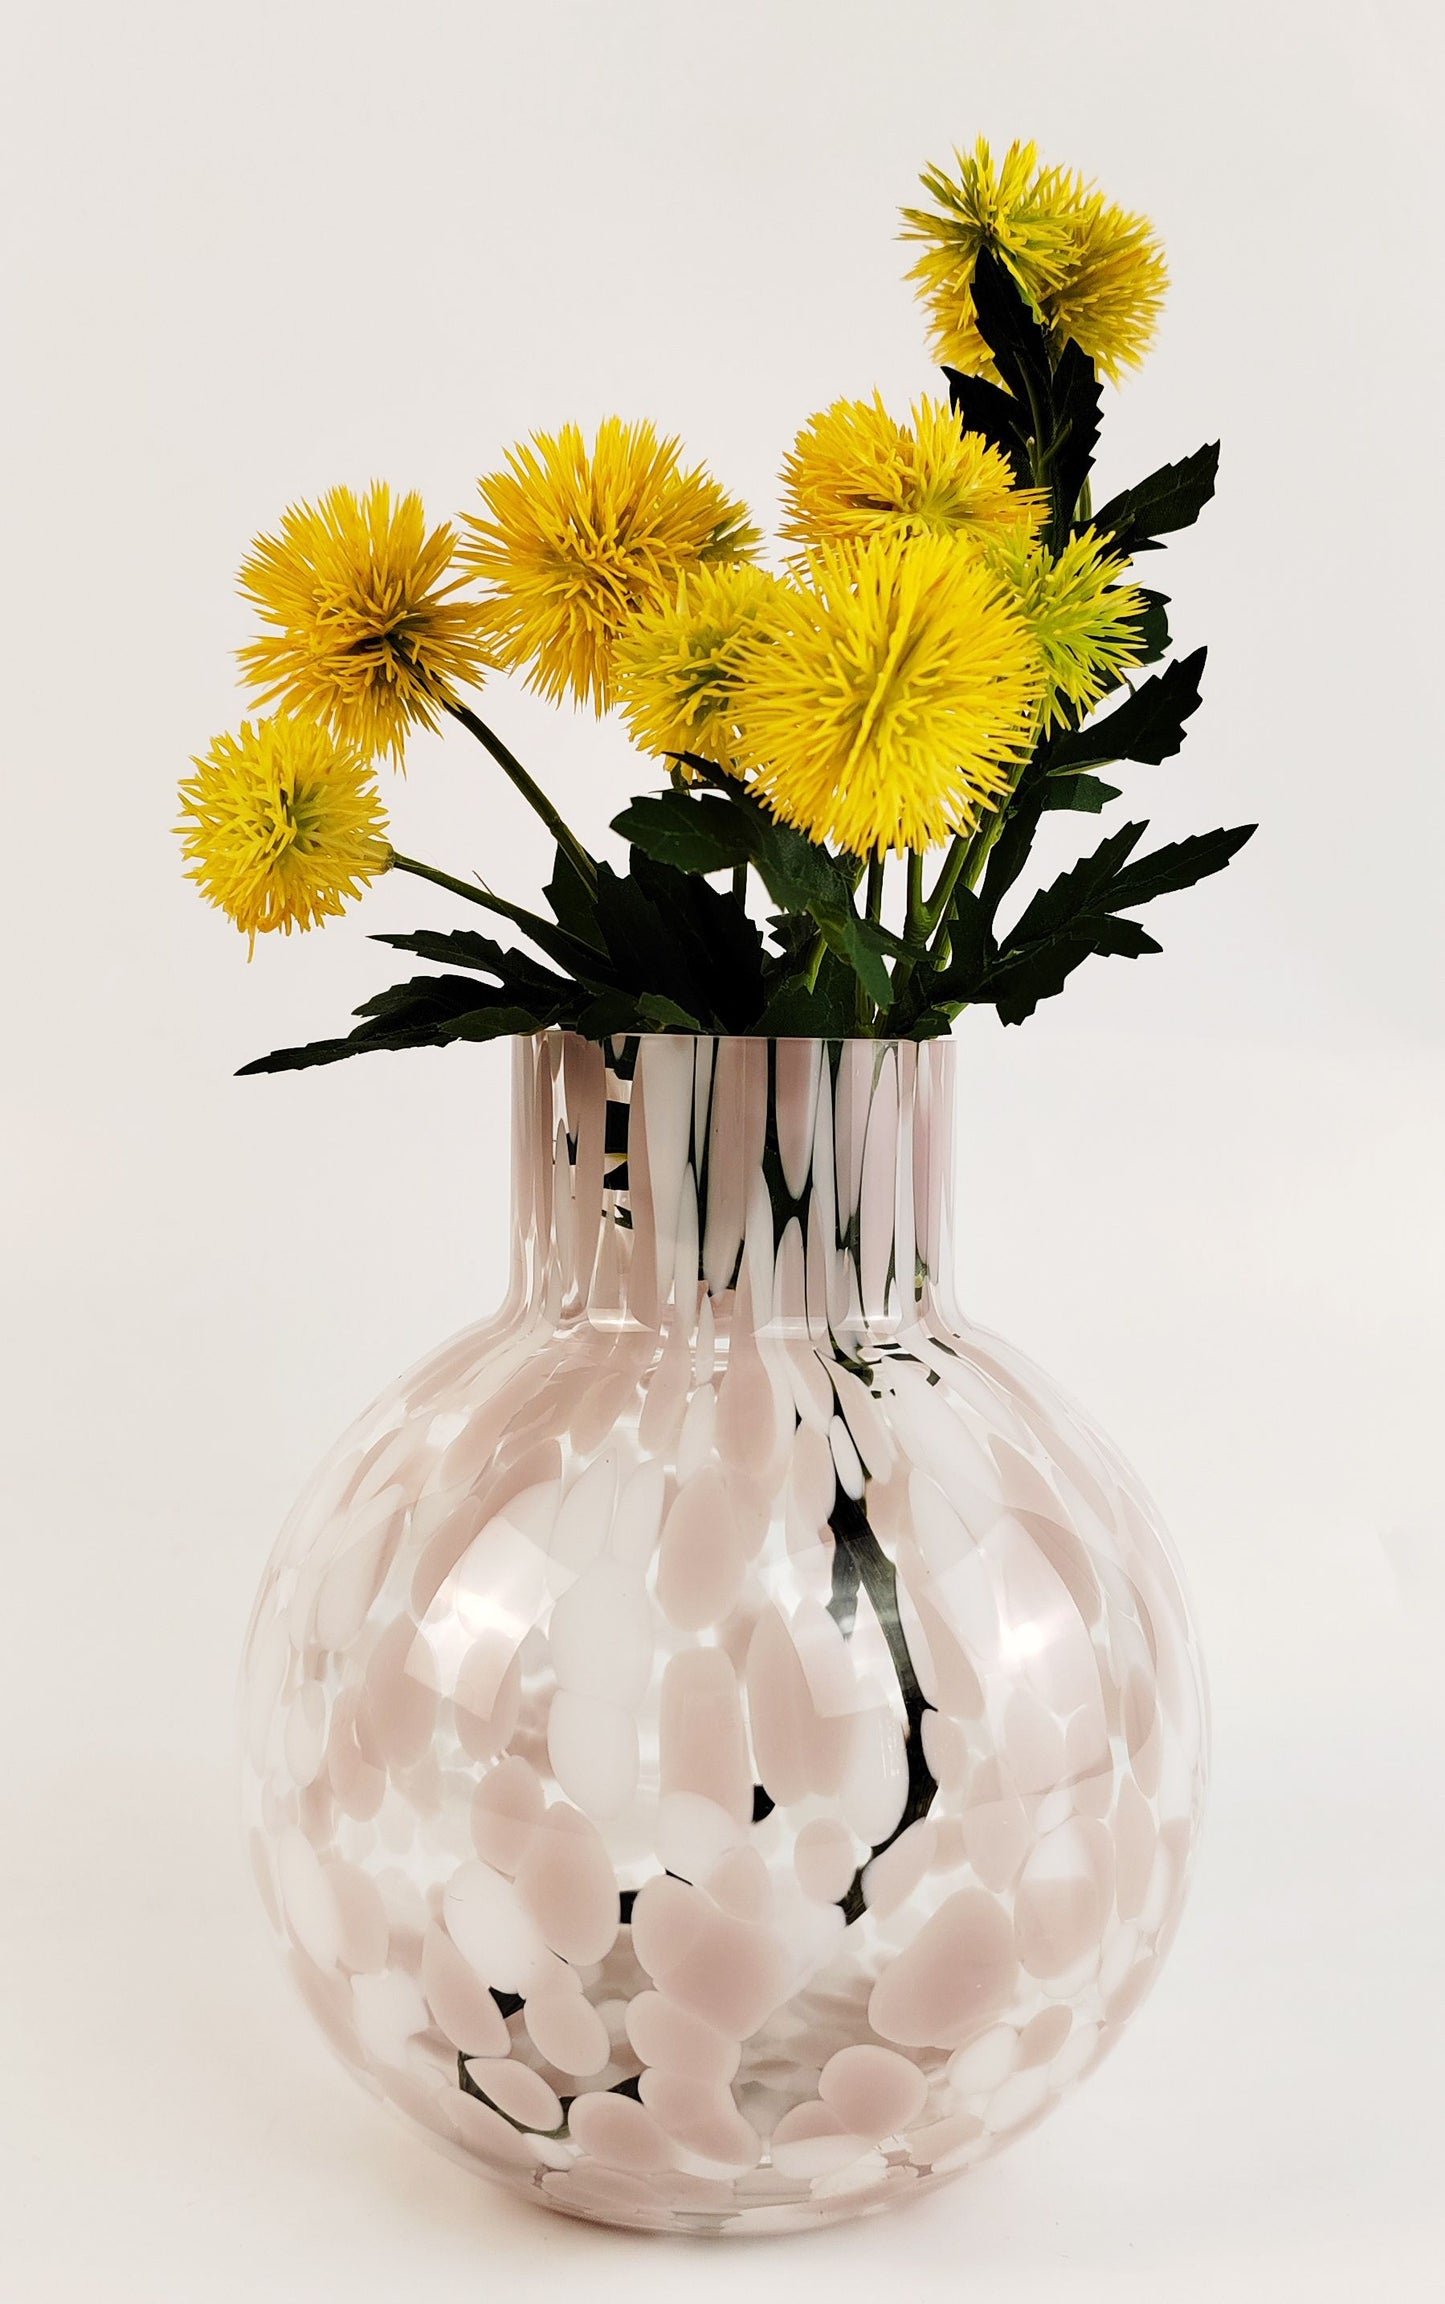 Jaslyn Speckle Vases 17cm